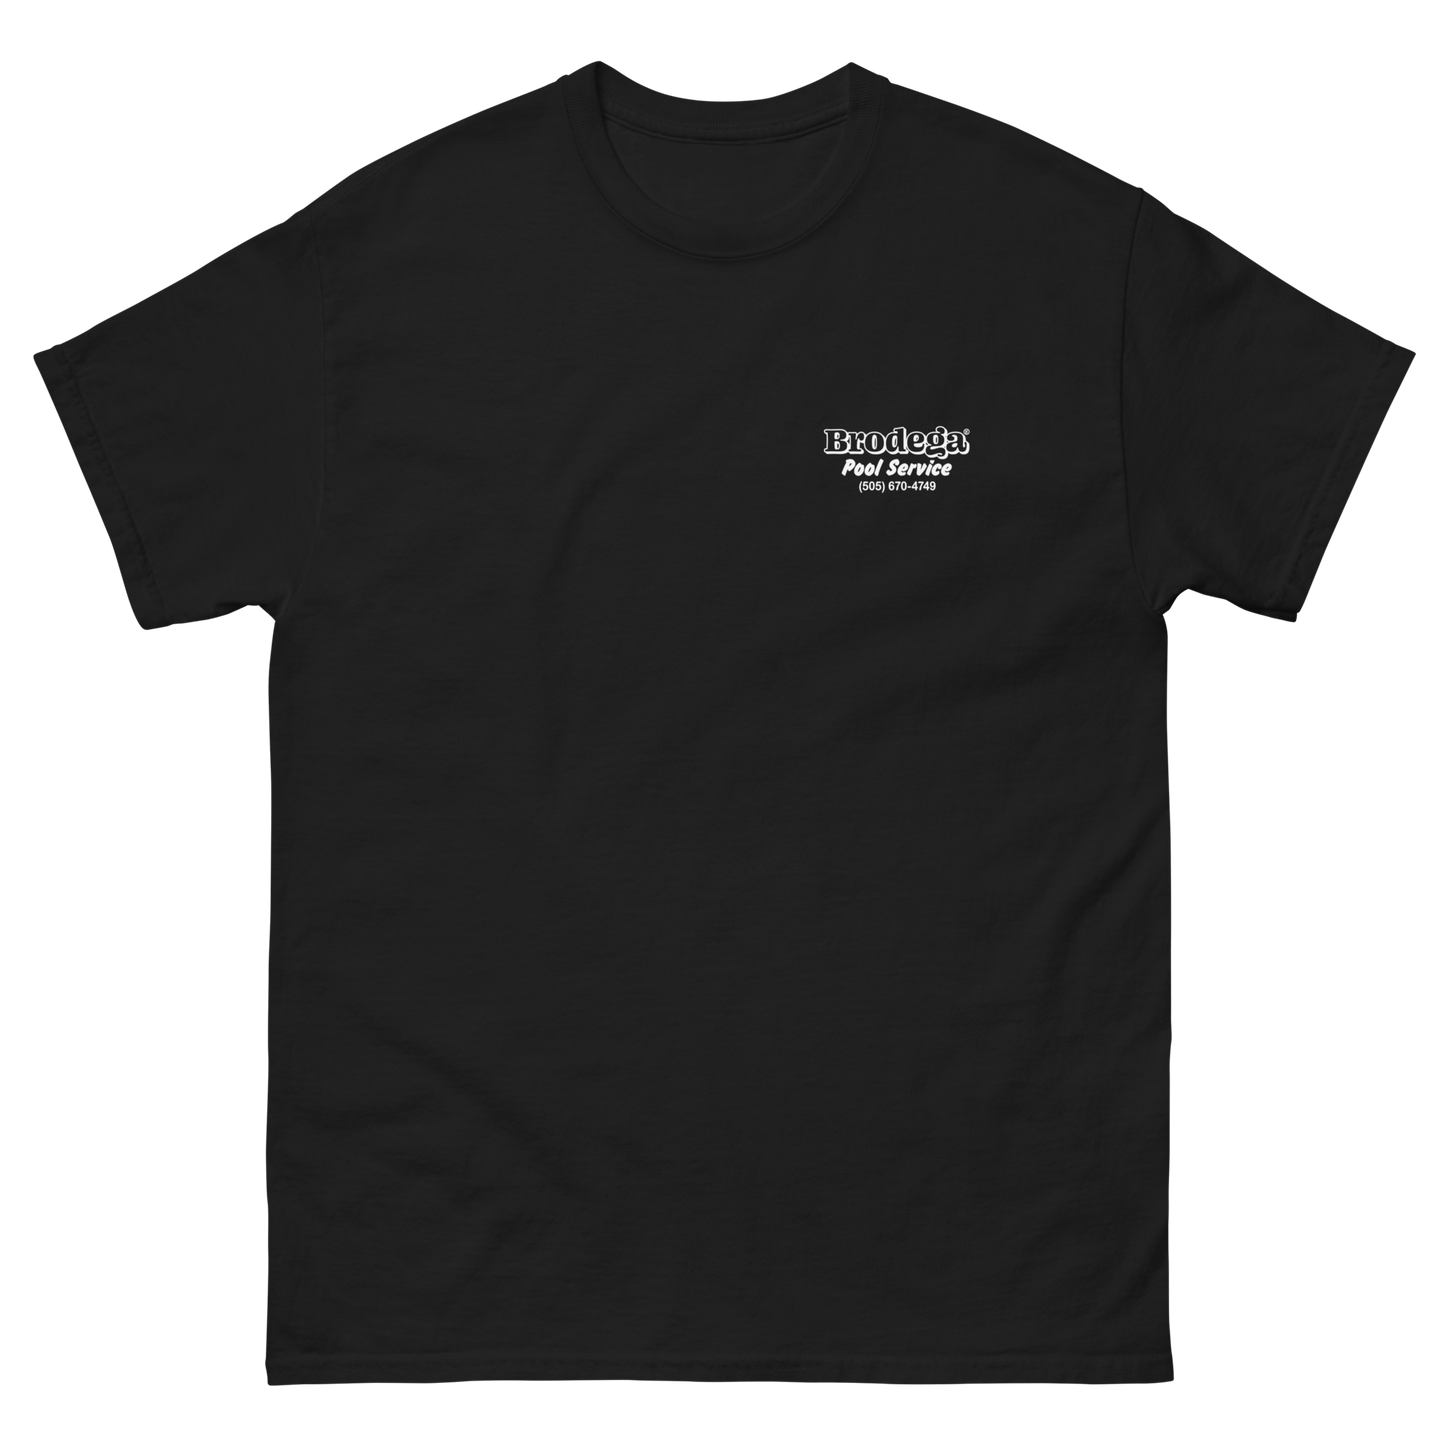 Herr Vorarbeiter / T-Shirt